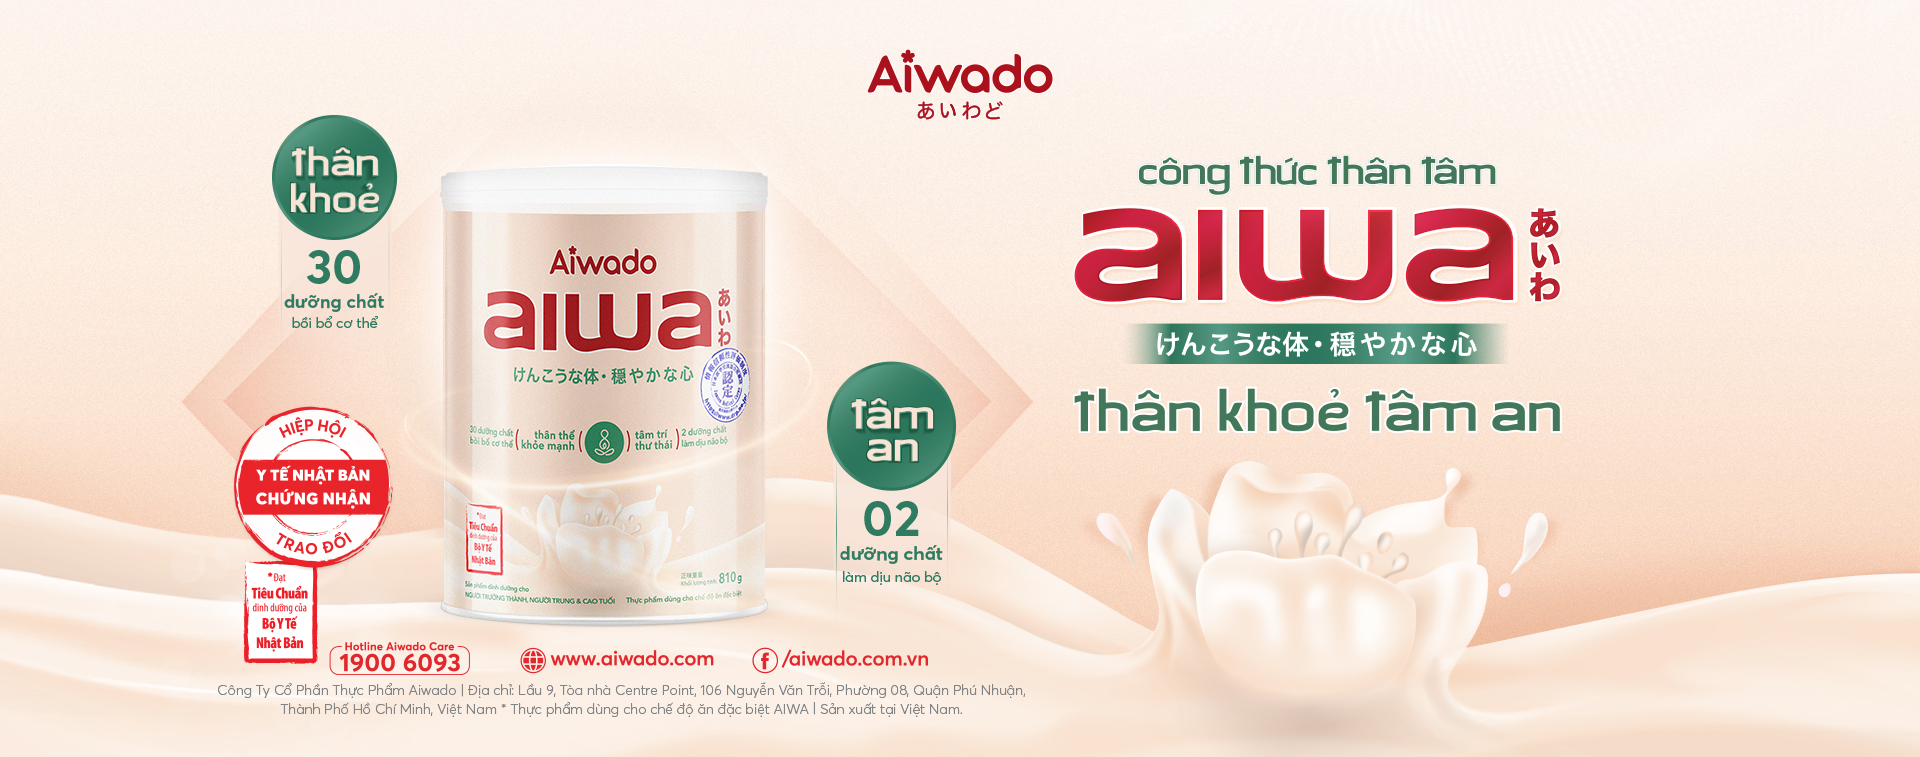 Aiwa - Sữa cho thân khỏe tâm an